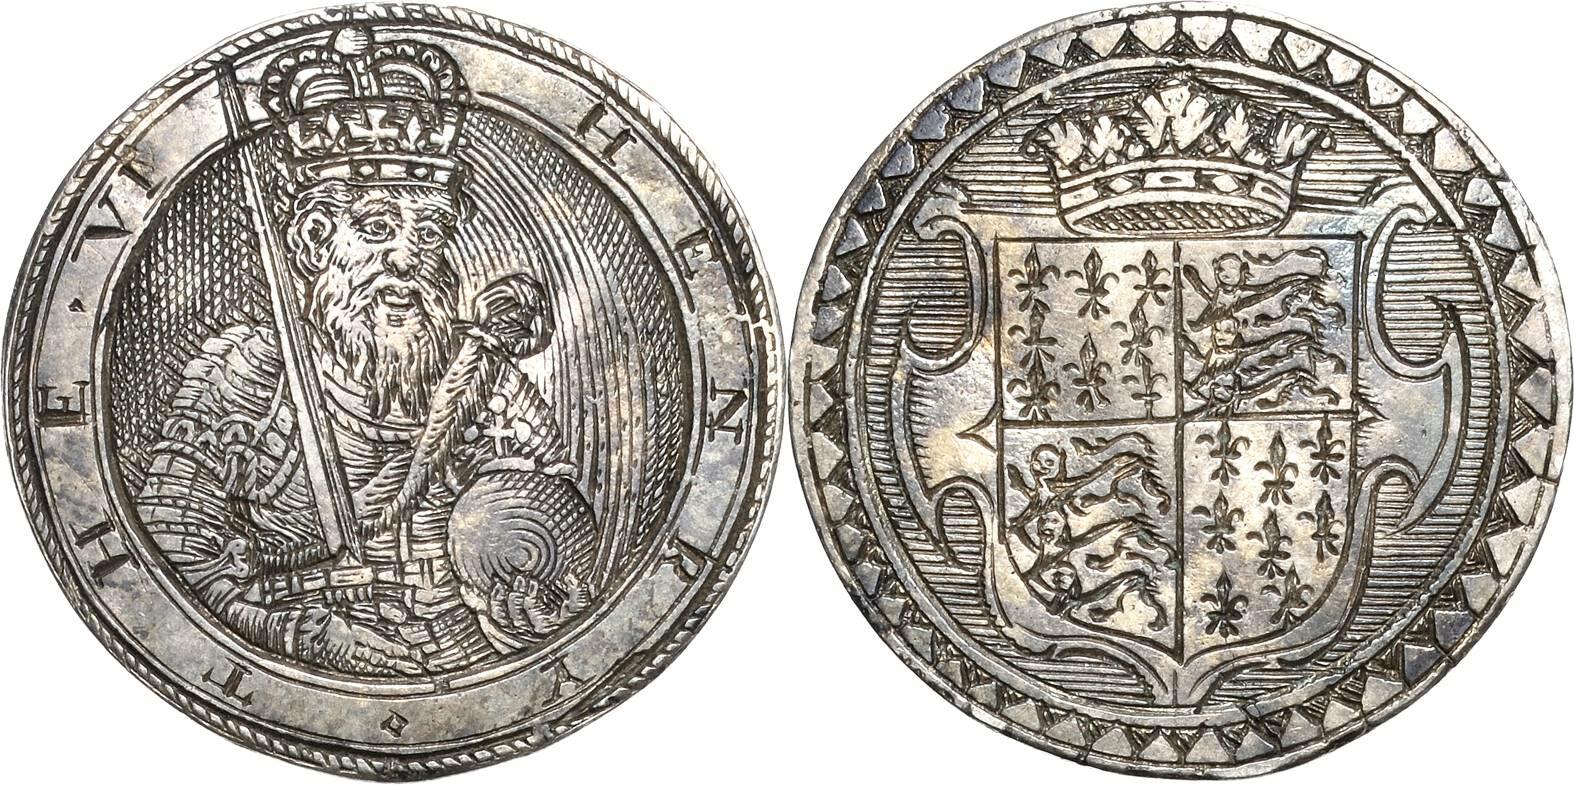 40.150.190: Europe - Royaume Uni - Henry VI., 1470-1471